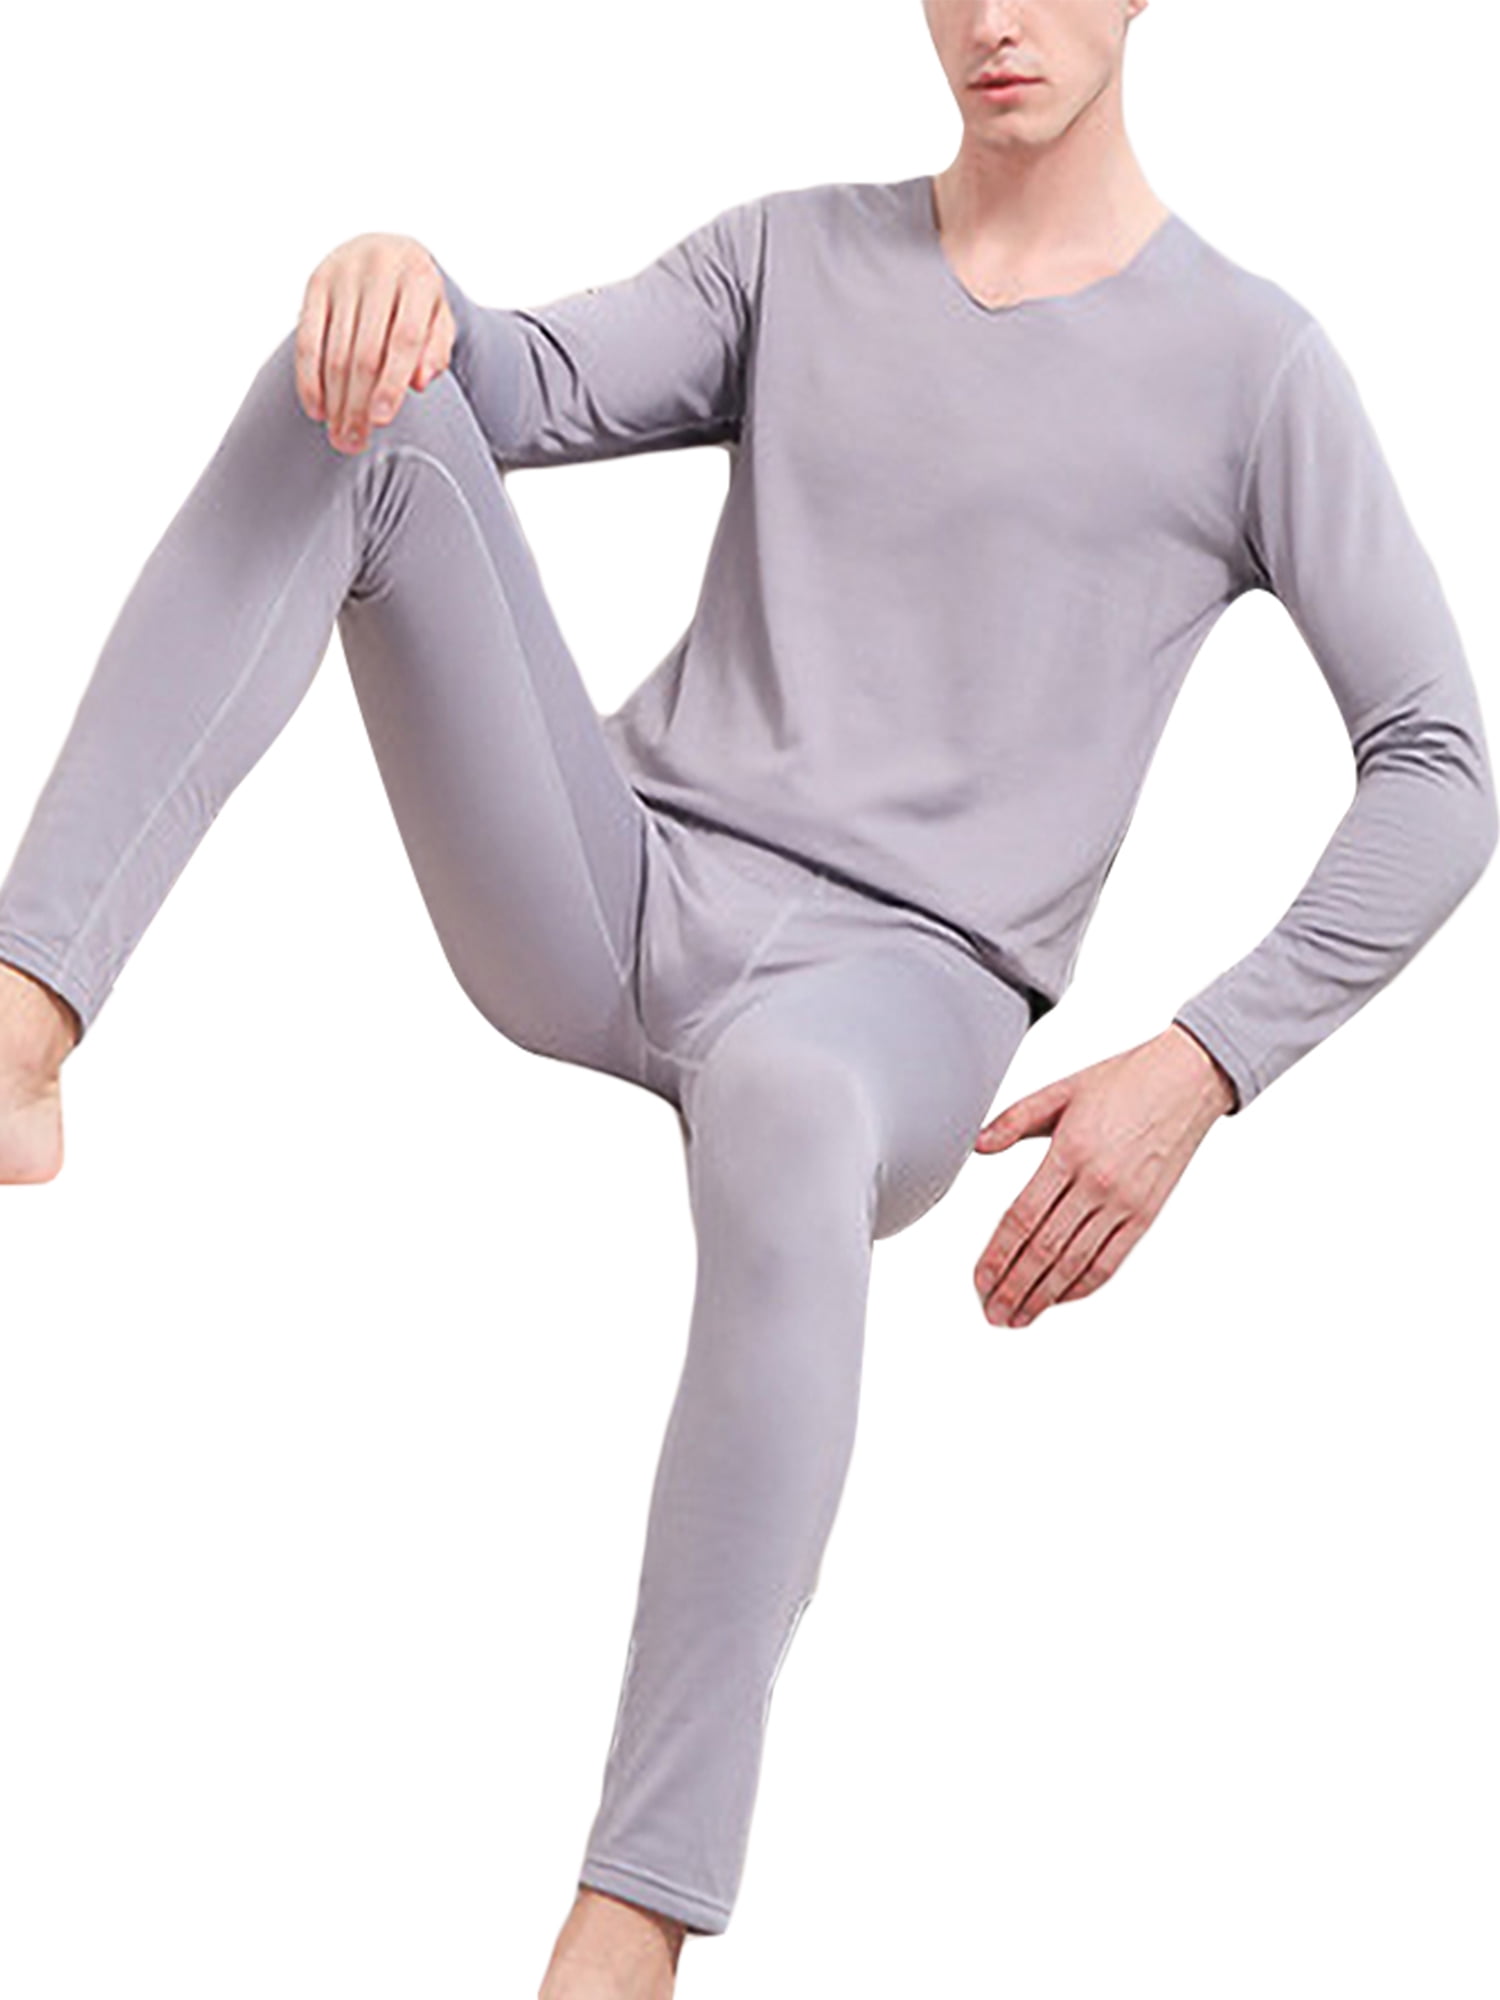 Sizes Men's Thermal Set Comfort Fit Fleece Line Underwear 2 PC Set:Top & Bottom 